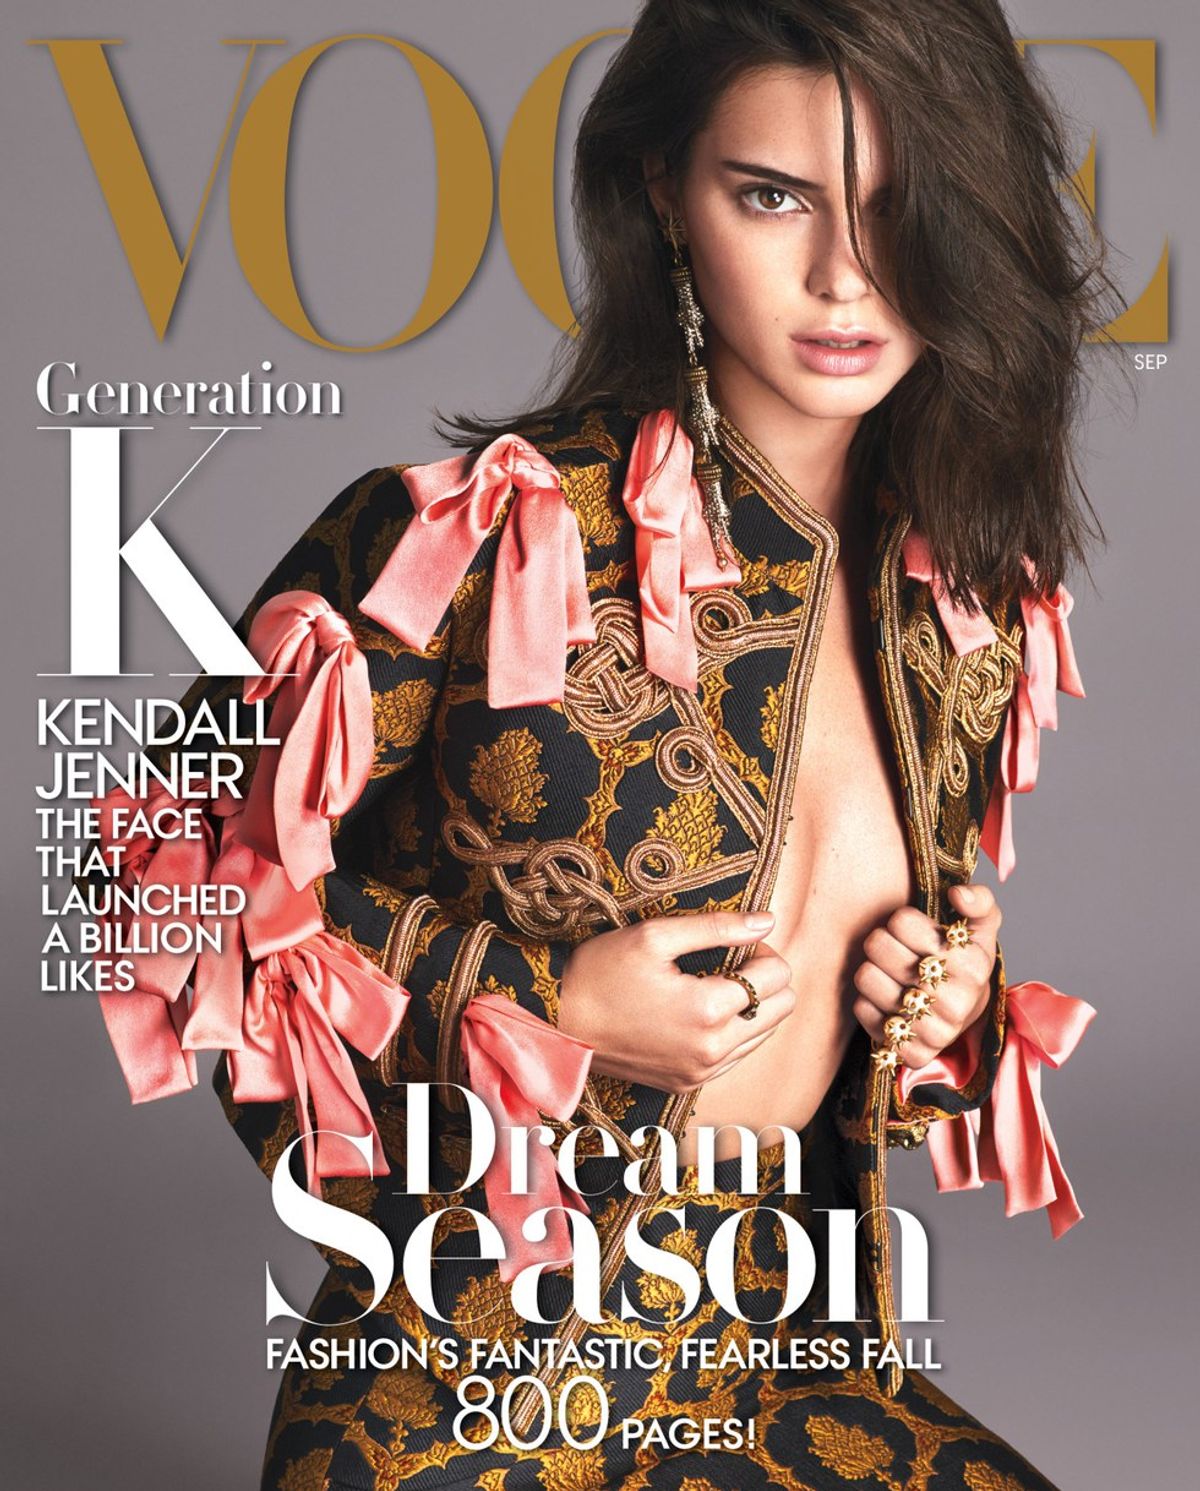 Does Kendall Jenner Deserve Vogue's September Cover